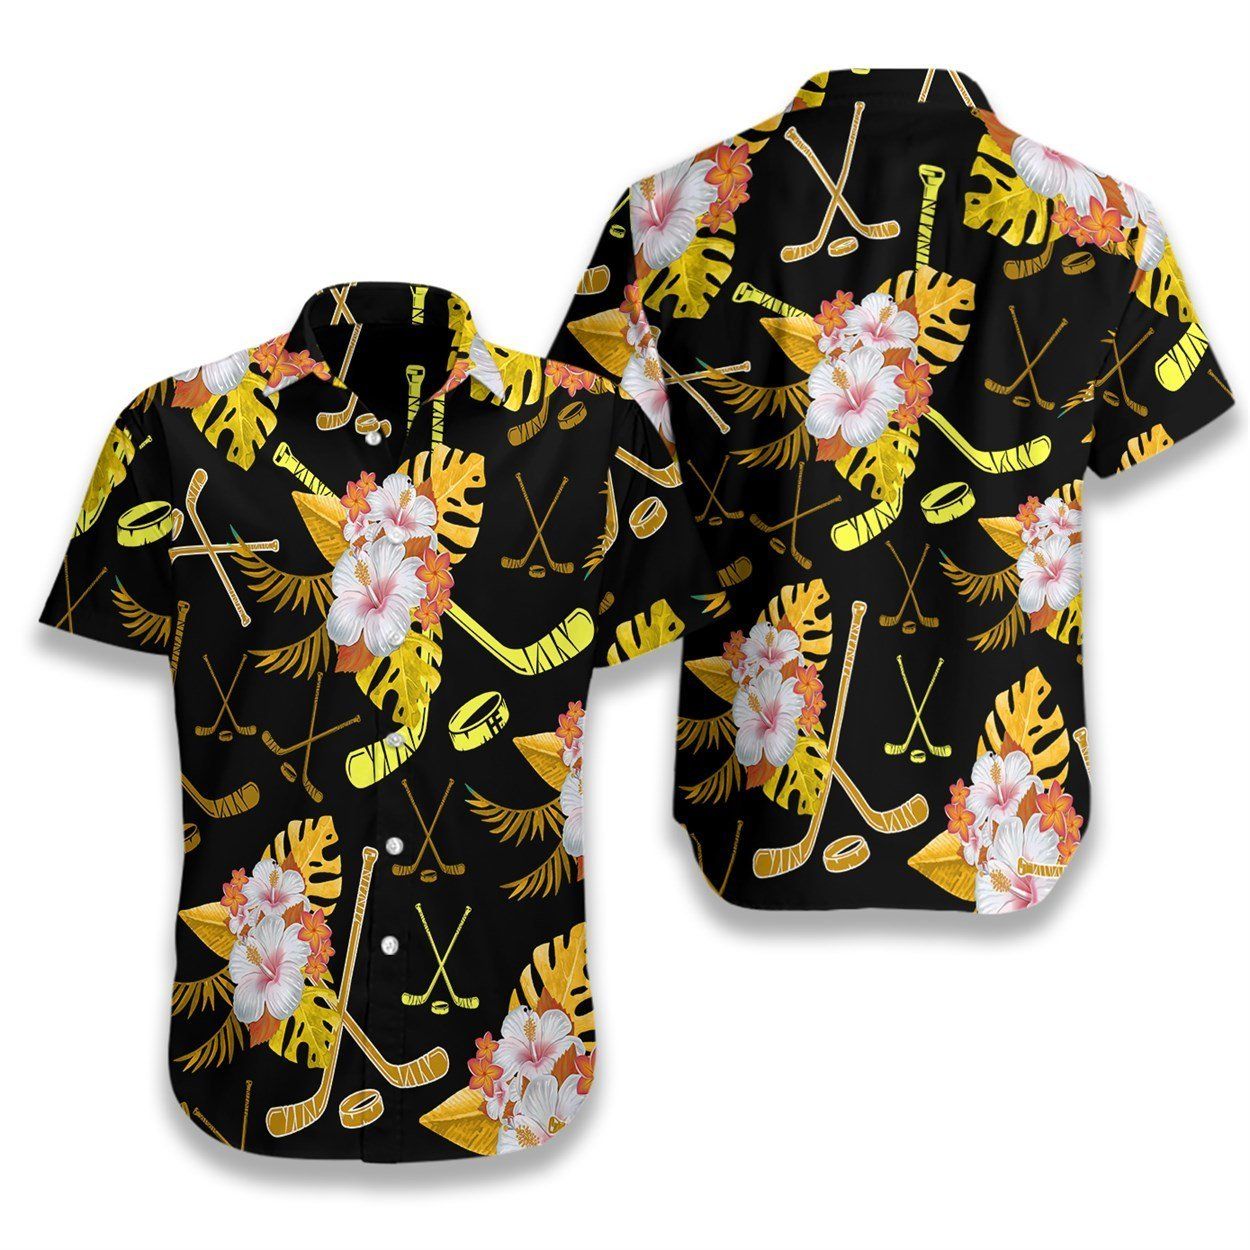 Hockey Tropical Black & Yellow Ez12 2807 Hawaiian Shirt